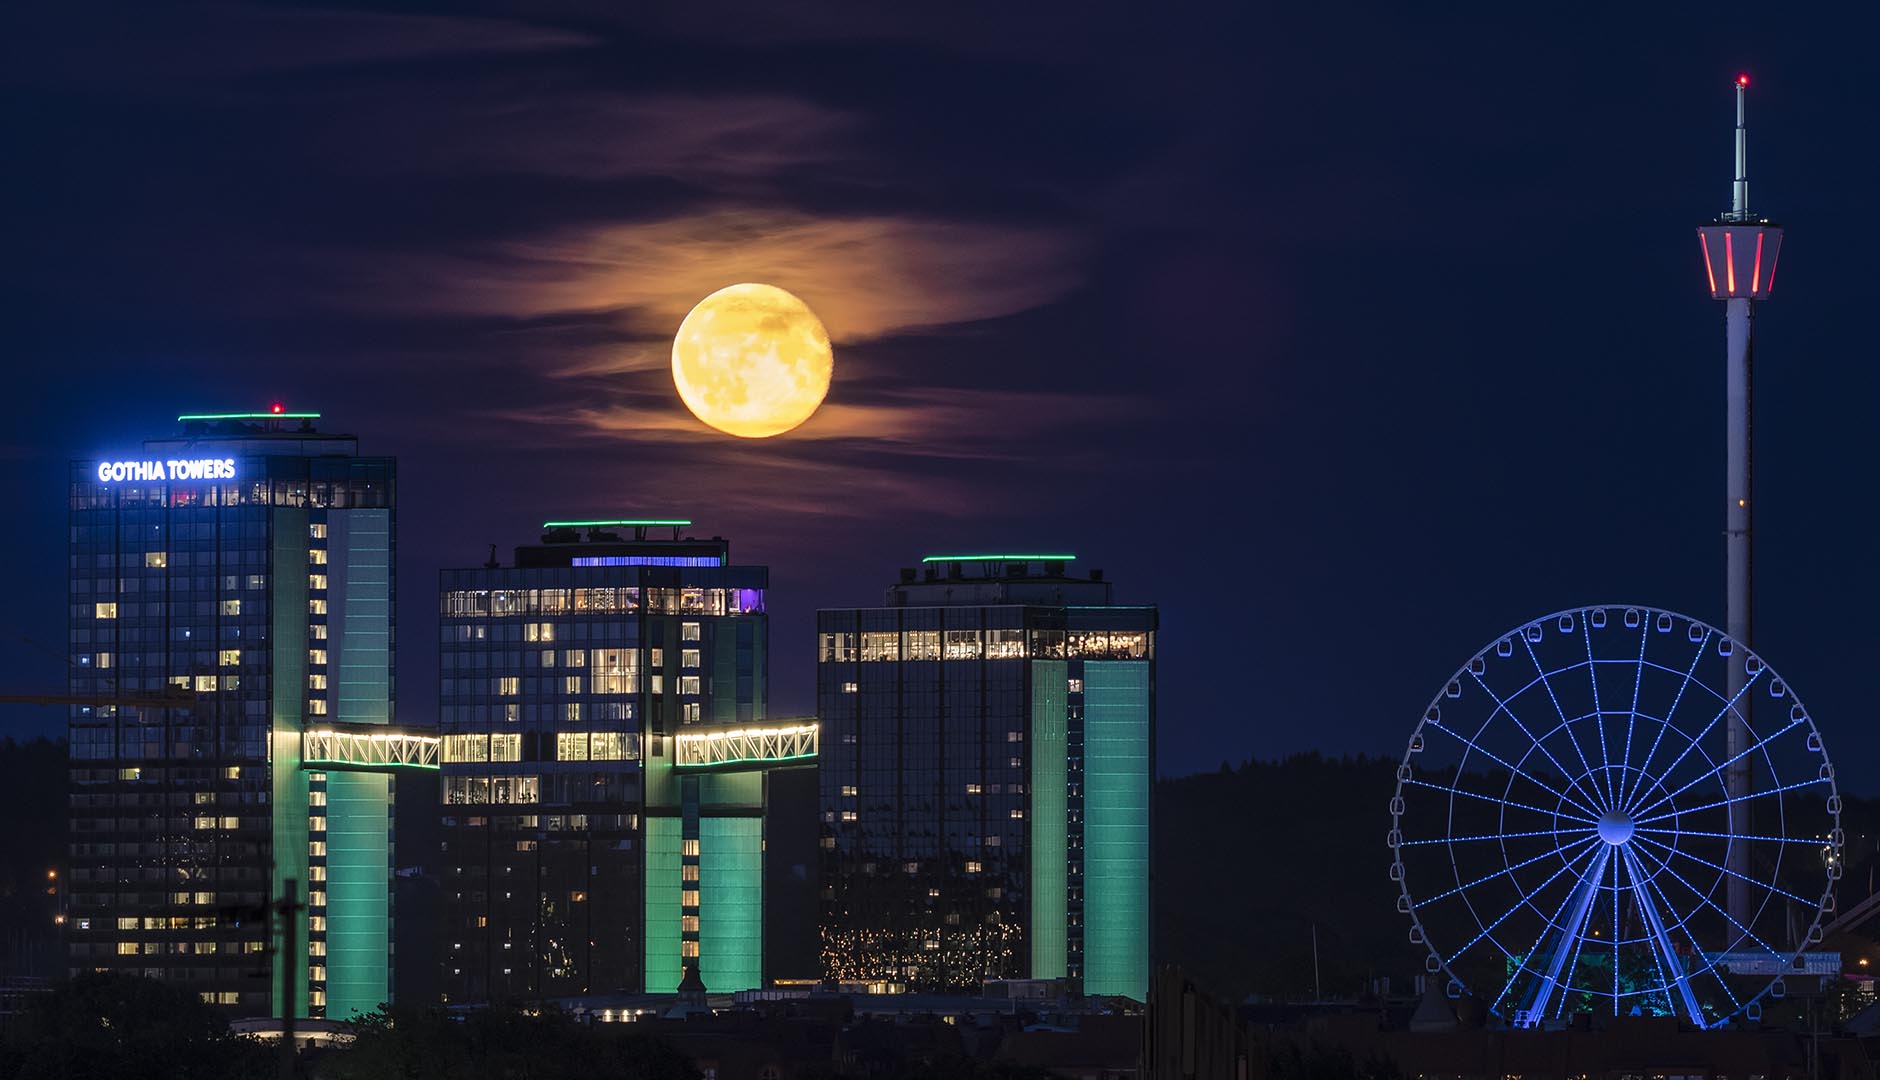 Hotell Gothia Towers upplyst av fullmåne